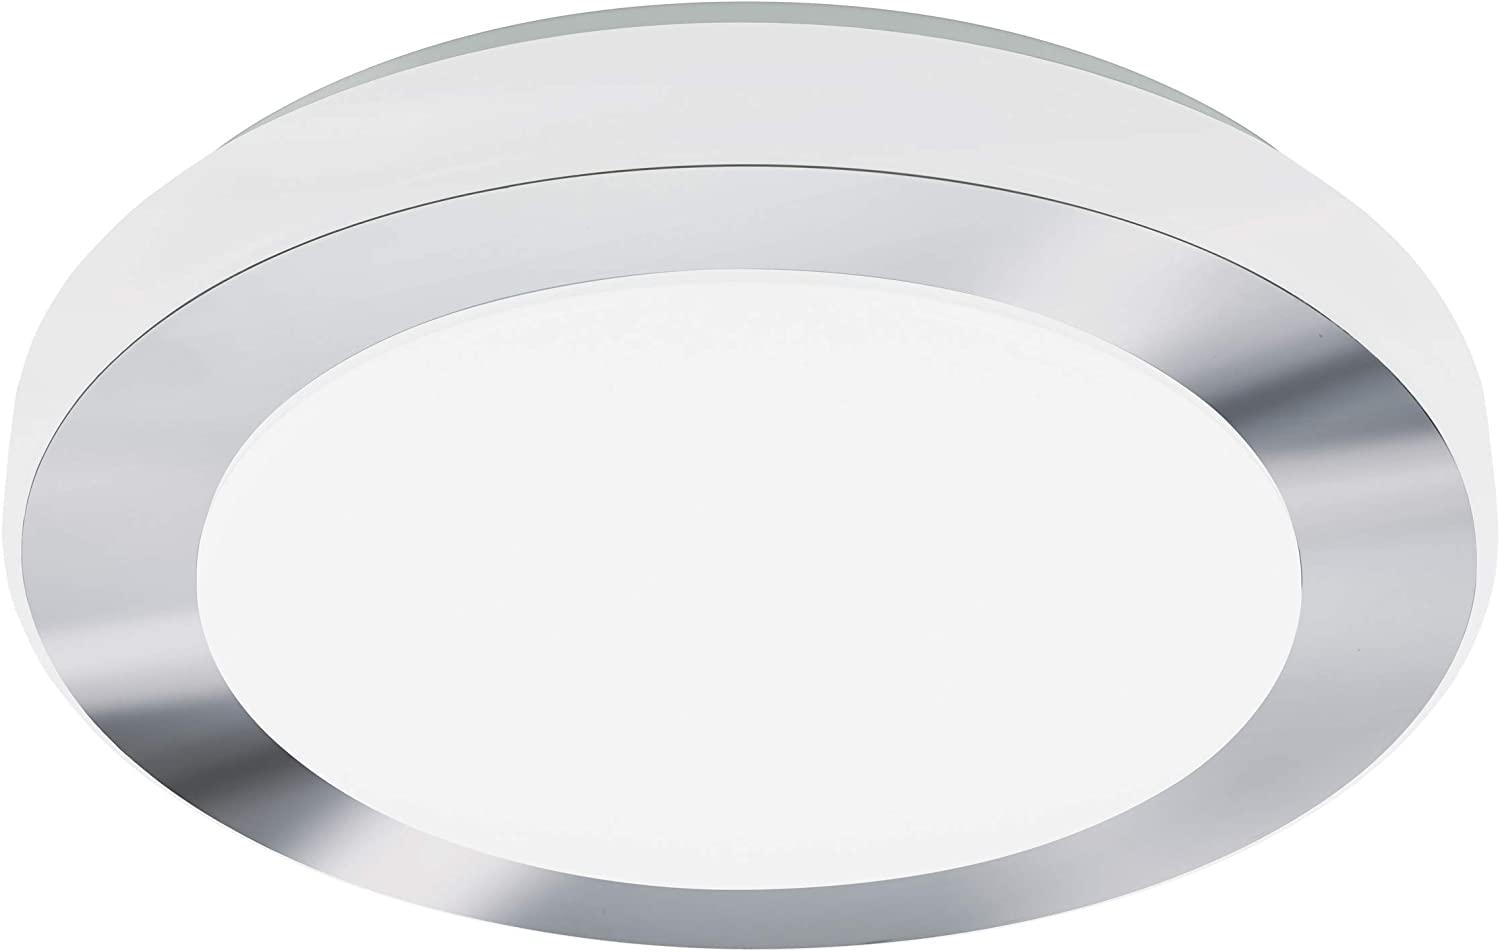 Eglo 95283 Badezimmerleuchte LED Carpi in chrom und weiß 3x7,3W Ø 38,5cm Bild 1